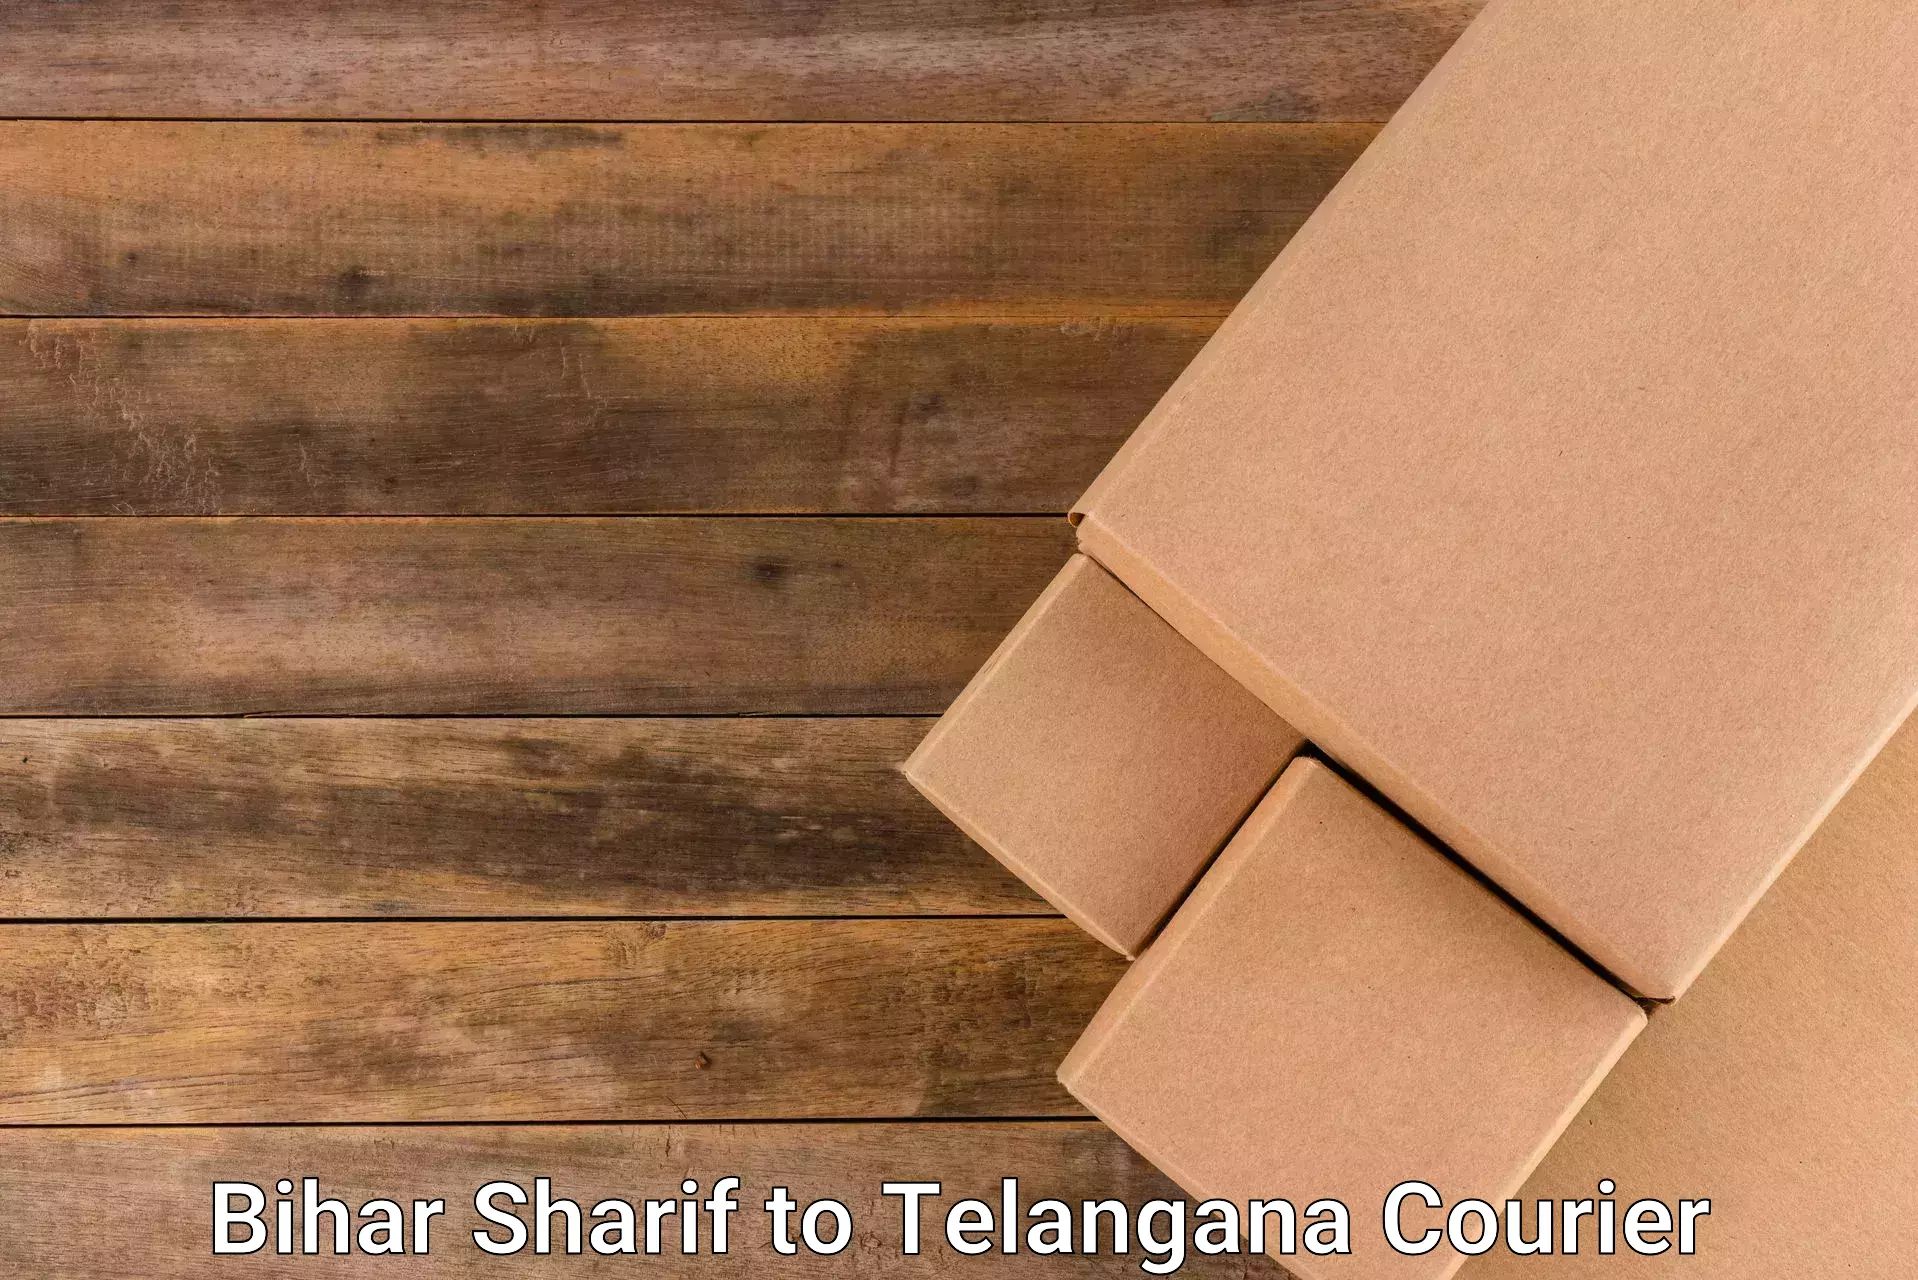 Efficient parcel transport Bihar Sharif to Chegunta